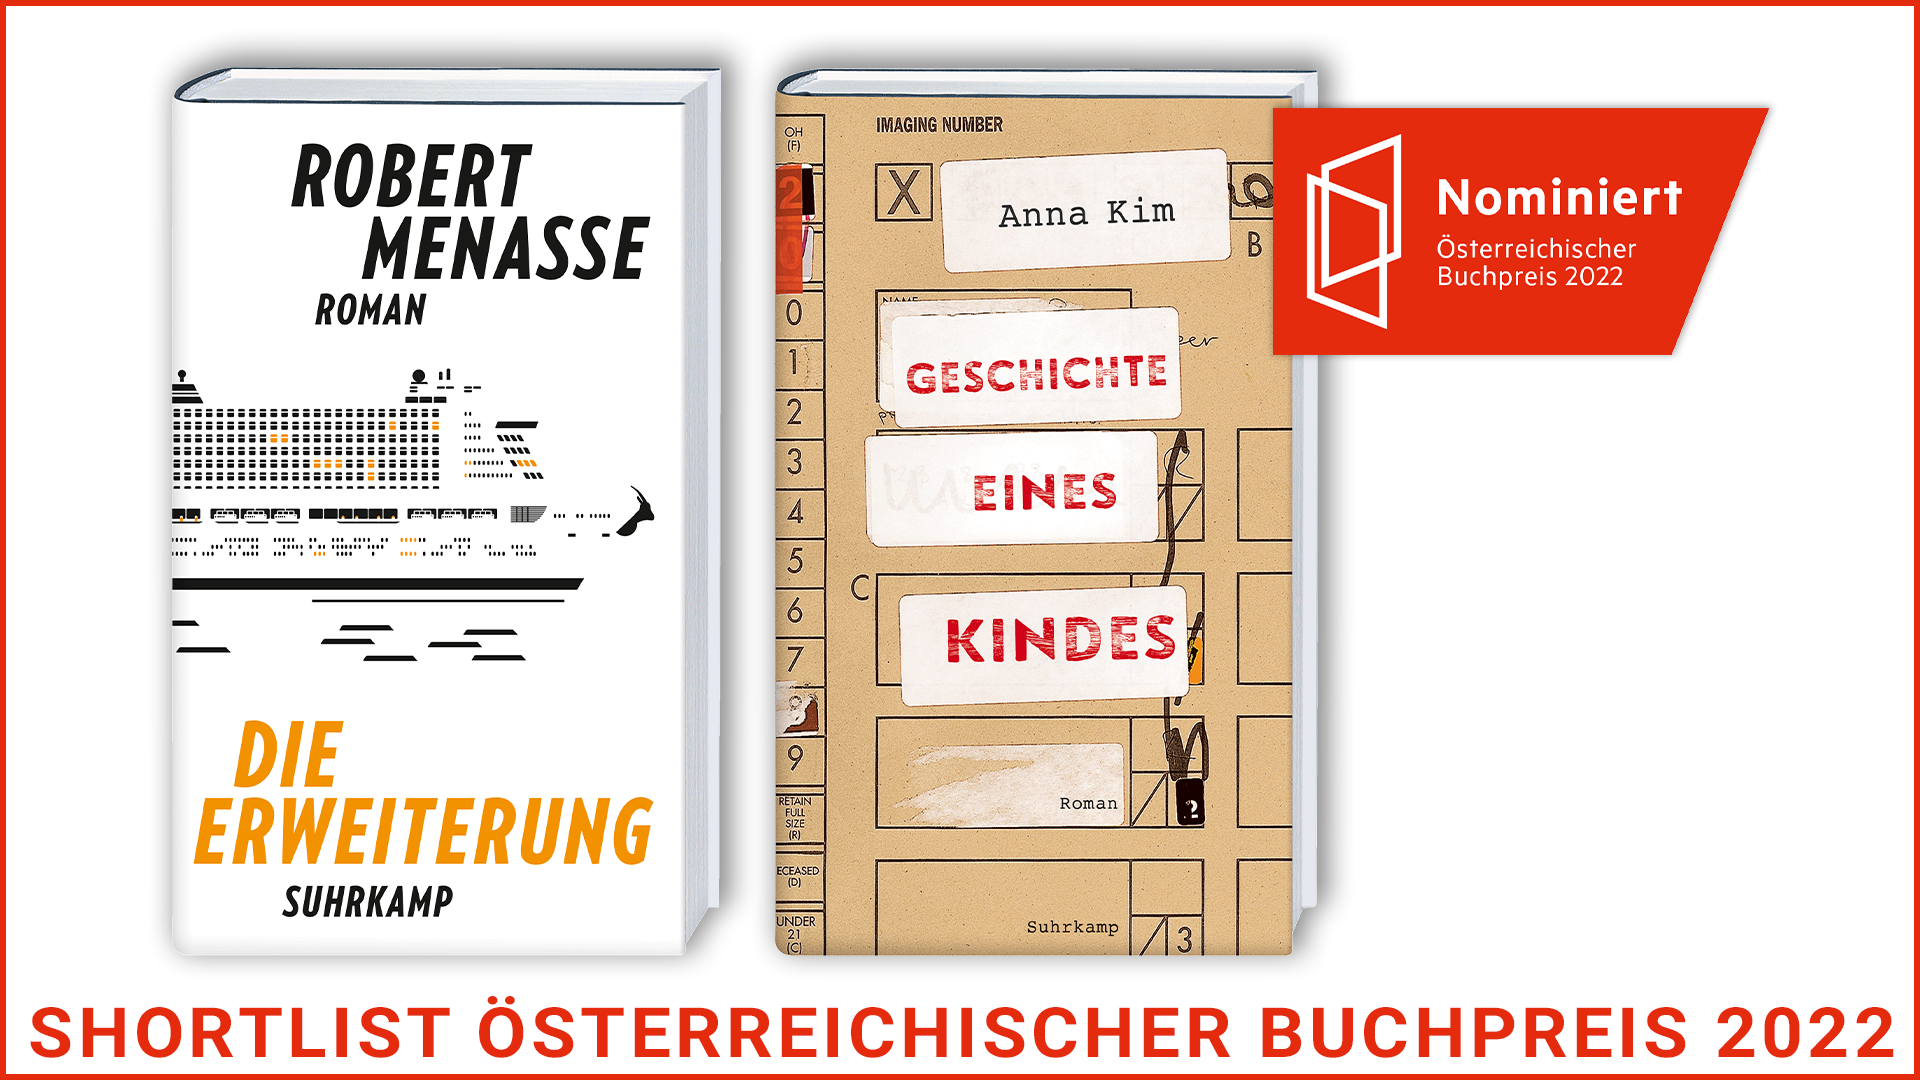 Beitrag zu Anna Kim und Robert Menasse auf der Shortlist für den Österreichischen Buchpreis 2022